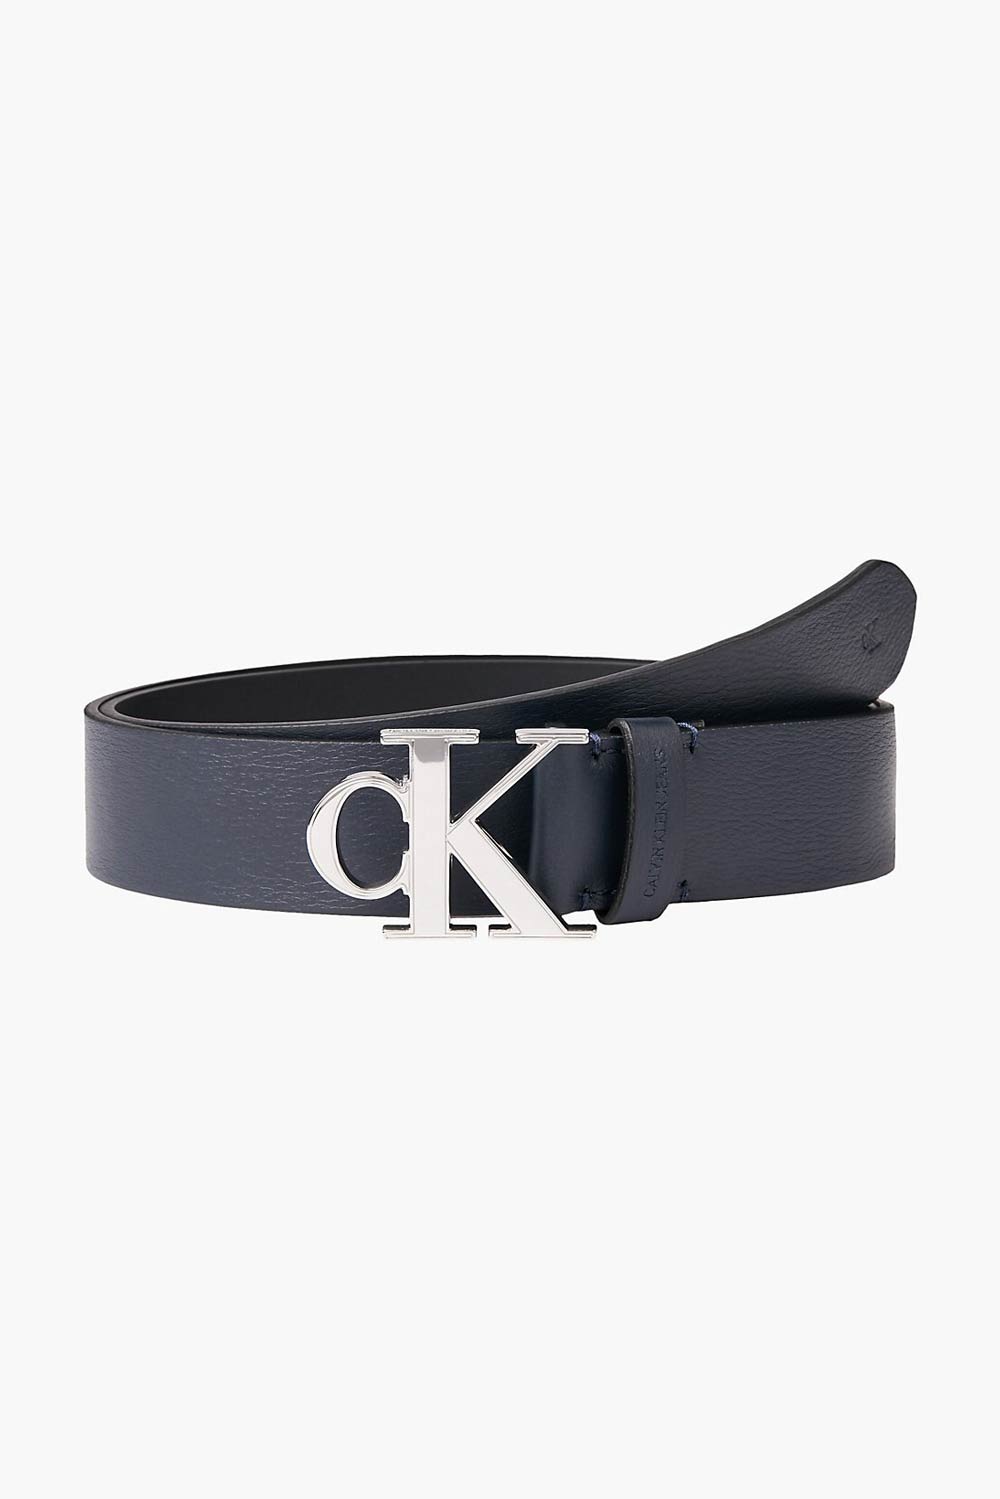 Calvin Klein modrý pánský kožený pásek Mono Plaque Belt